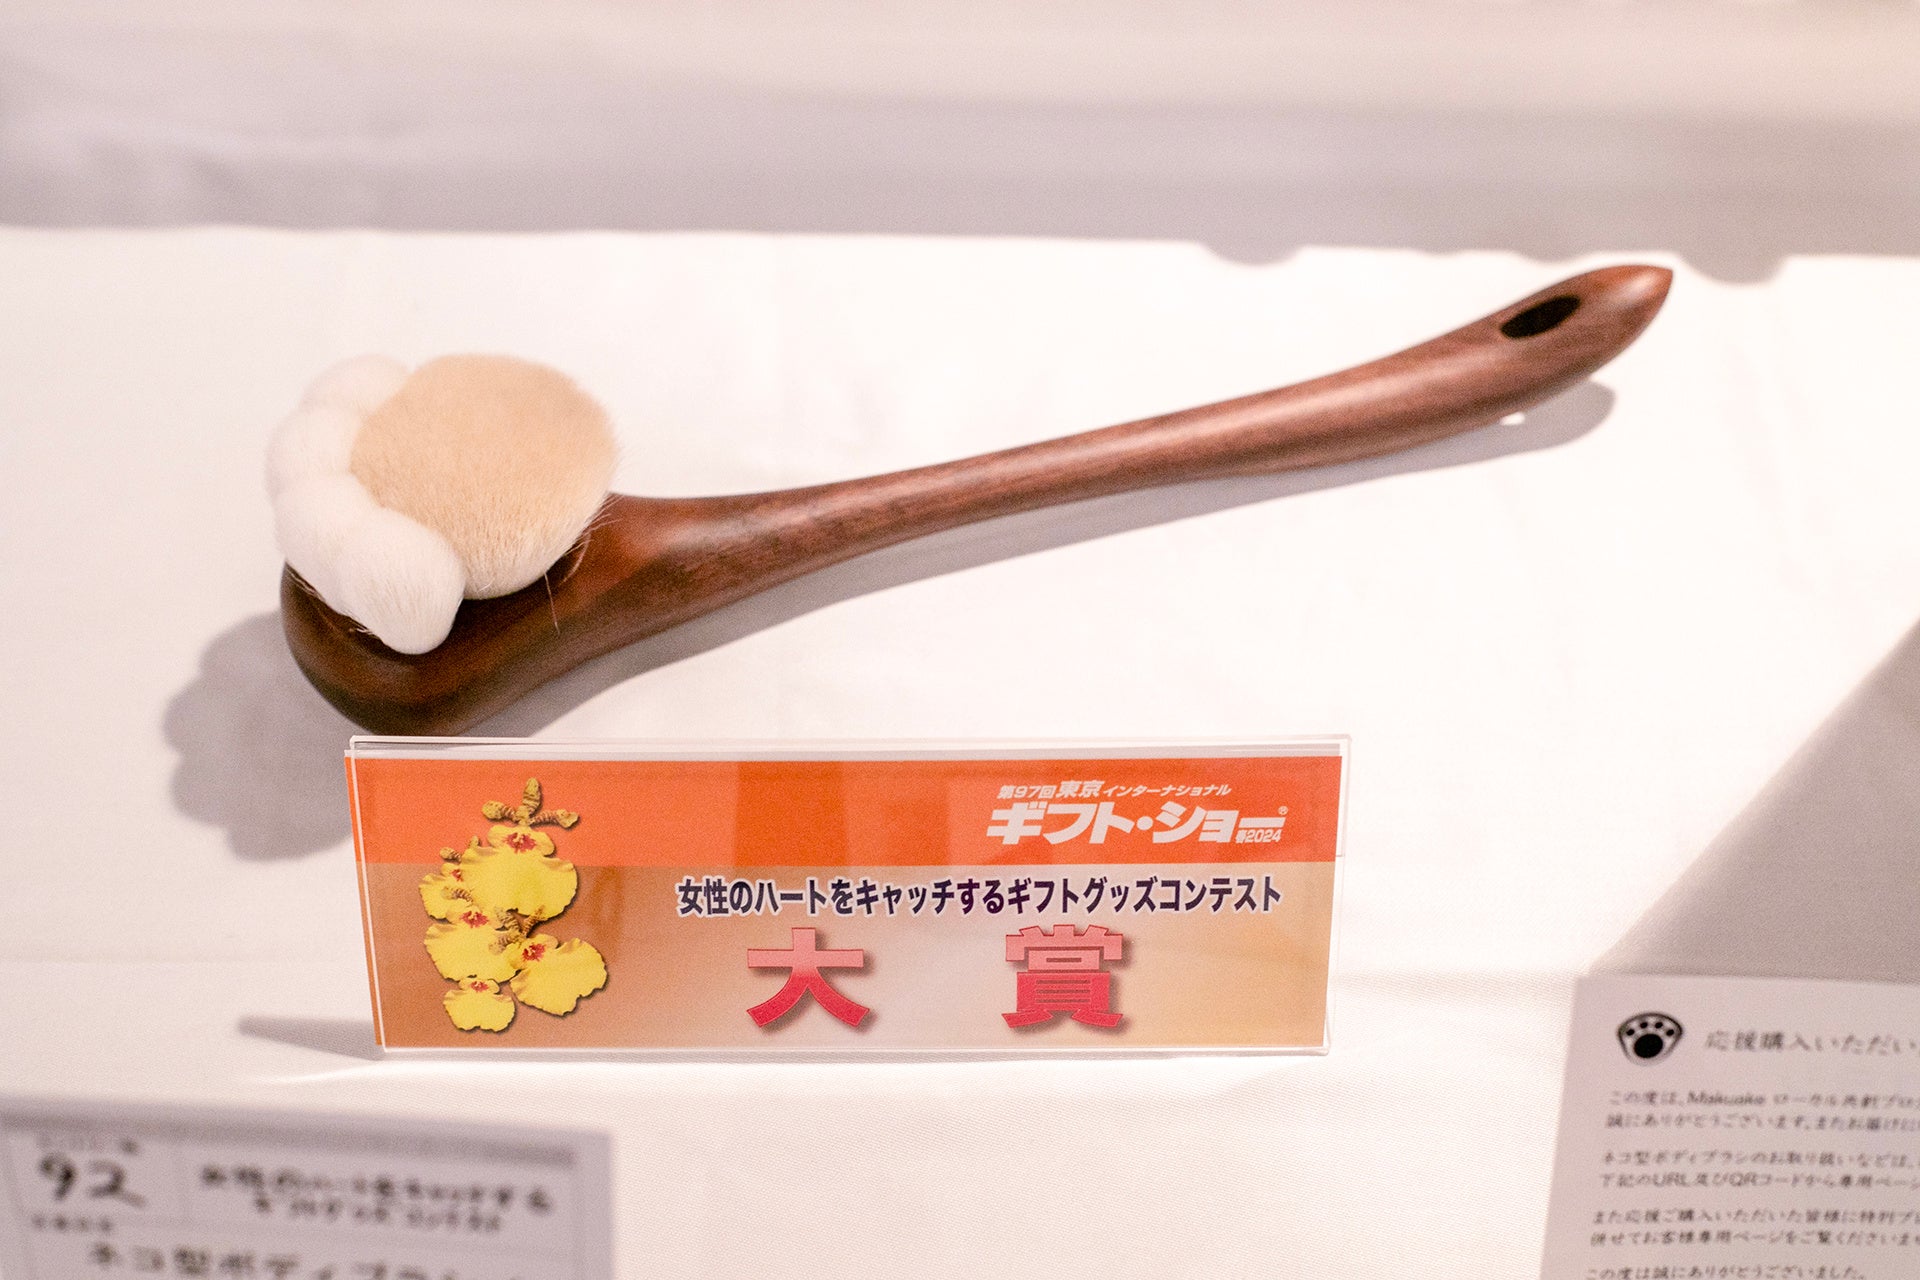 熊野筆で作った「ネコ型ボディブラシ」がギフト・ショーのコンテストで大賞を受賞